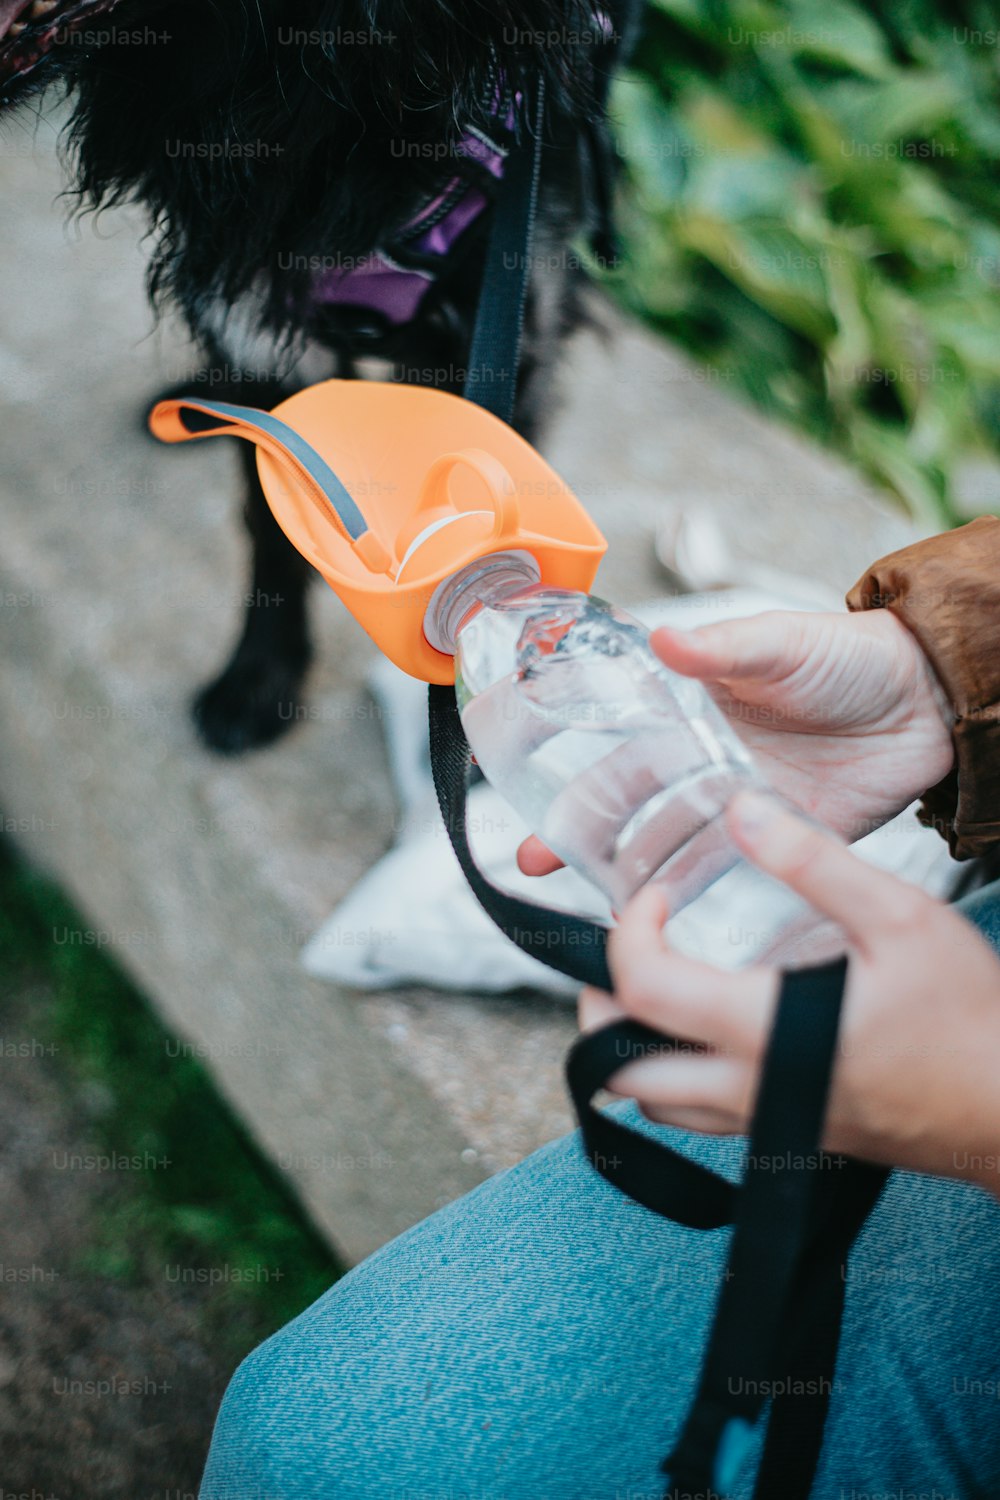 Un cane nero in piedi accanto a una persona che tiene una bottiglia d'acqua